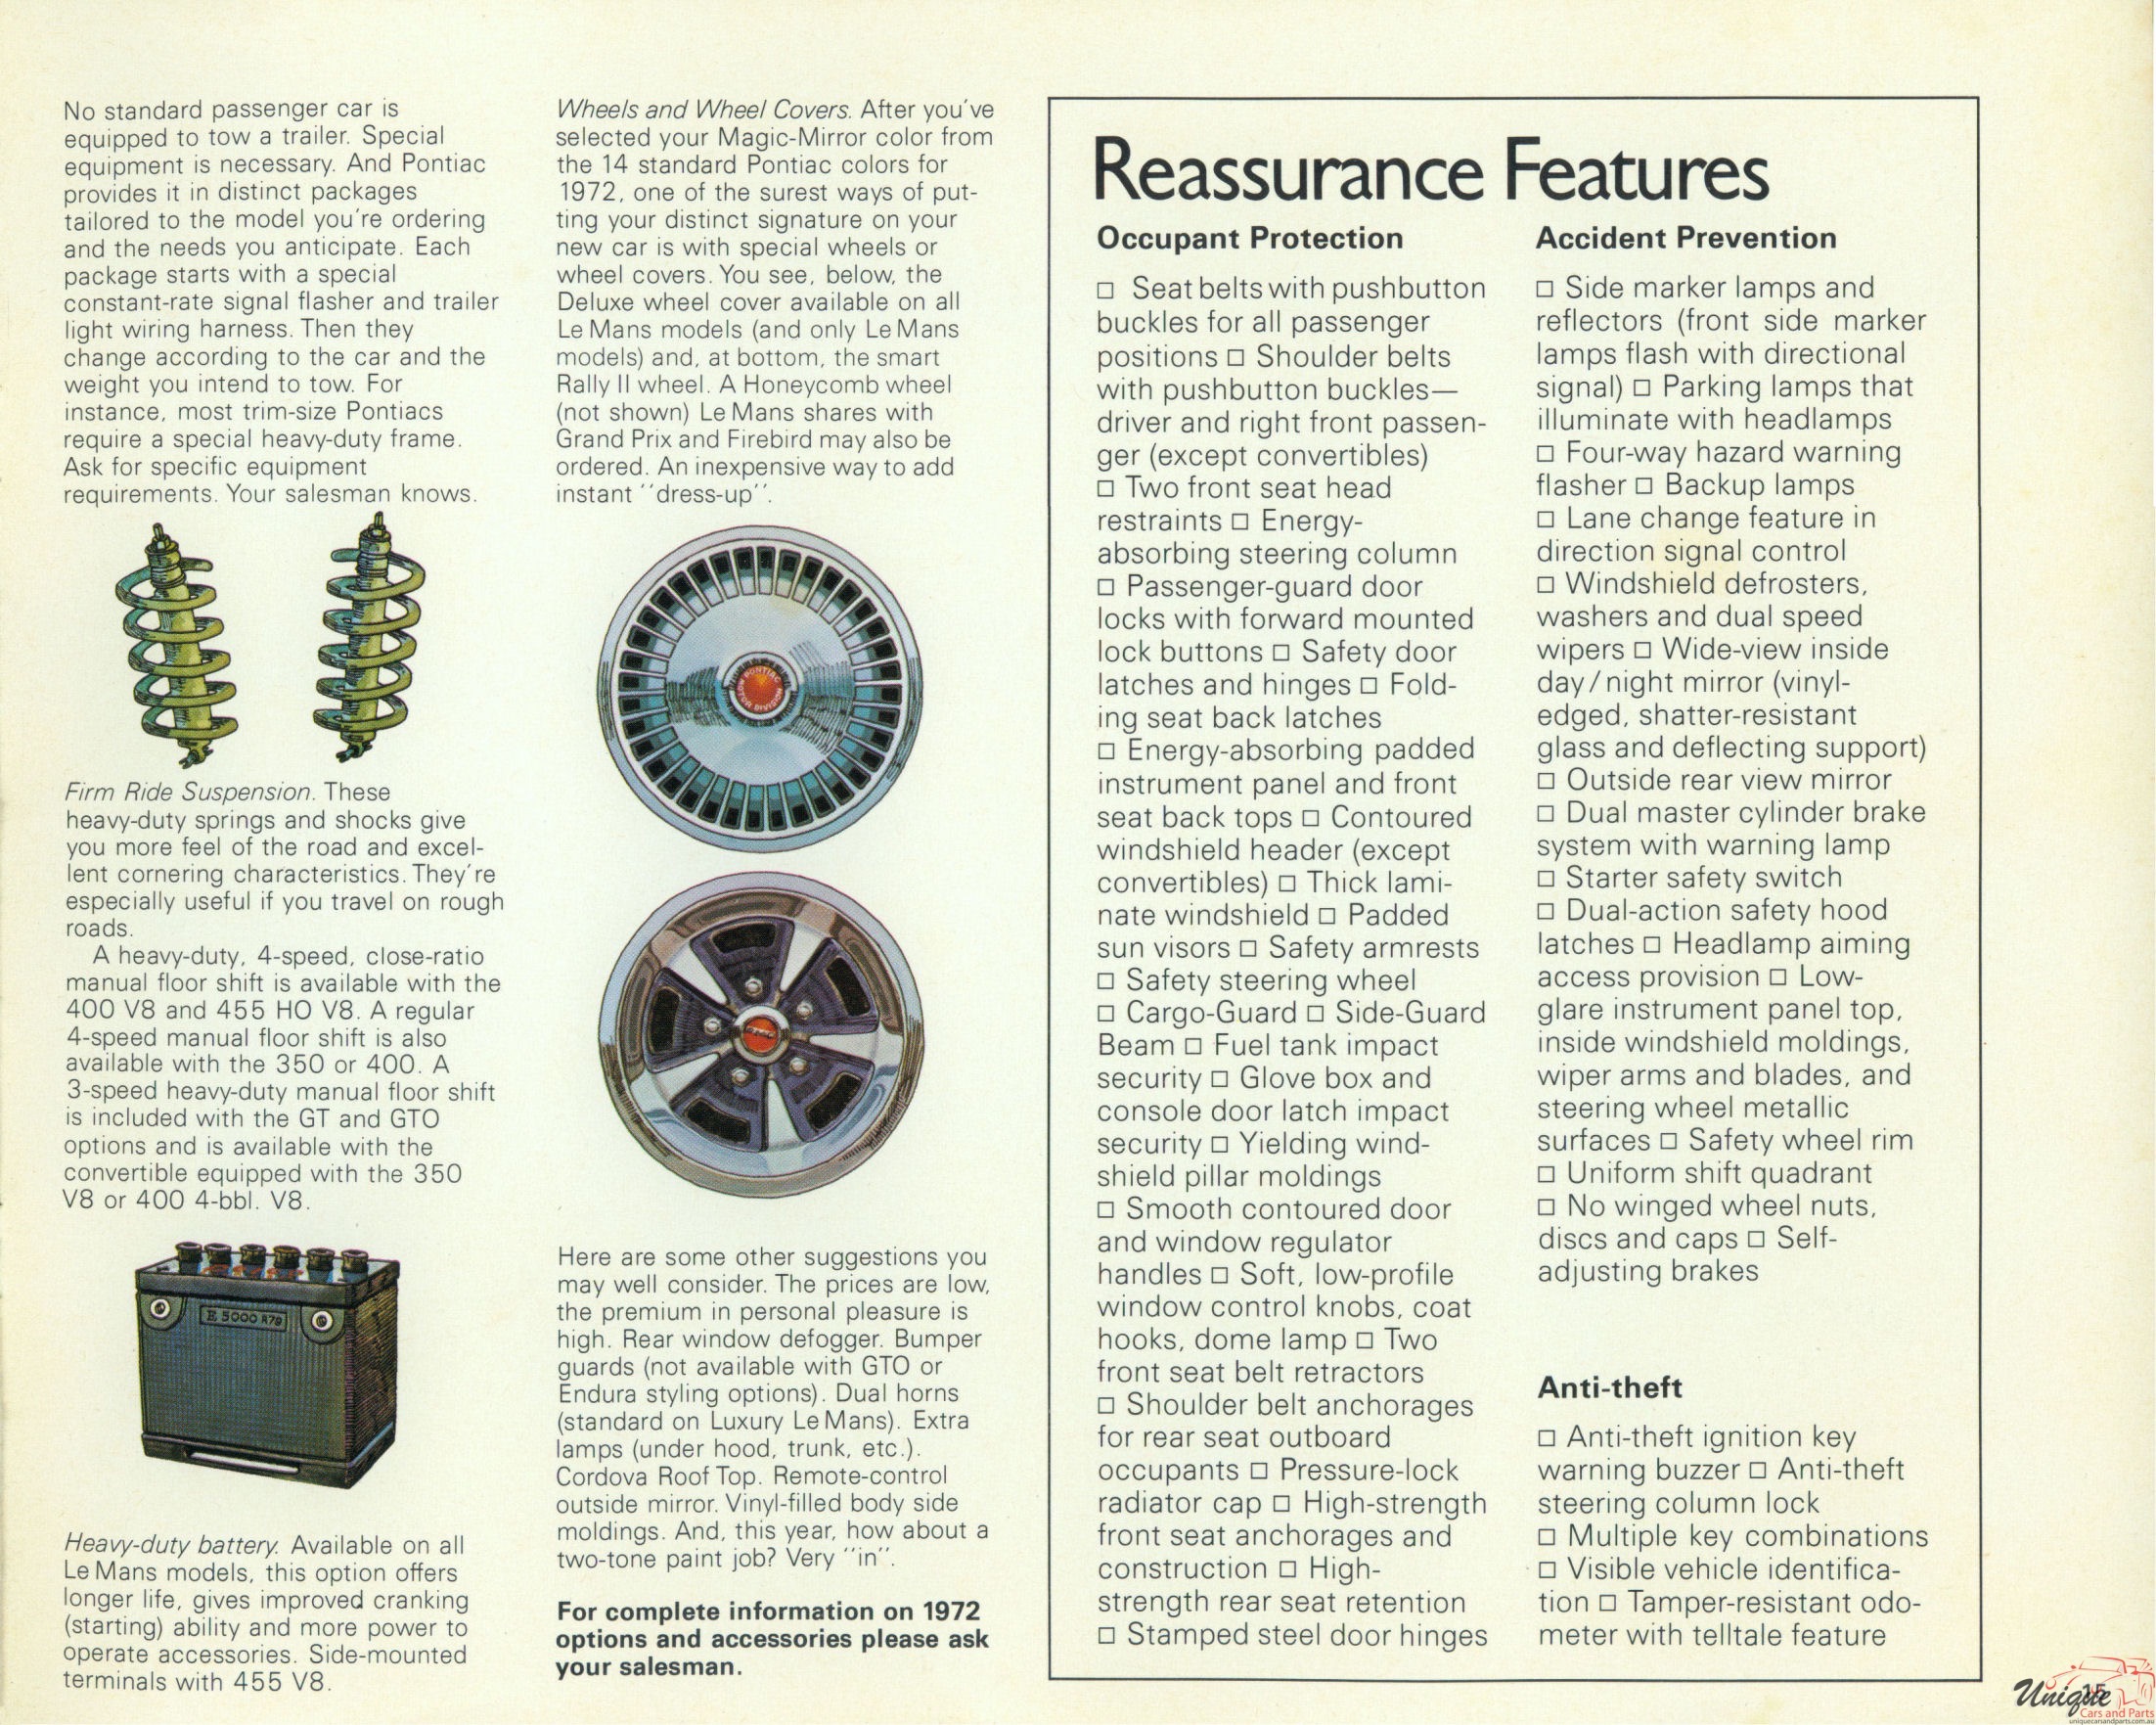 1972 Canadian Pontiac LeMans Brochure Page 7